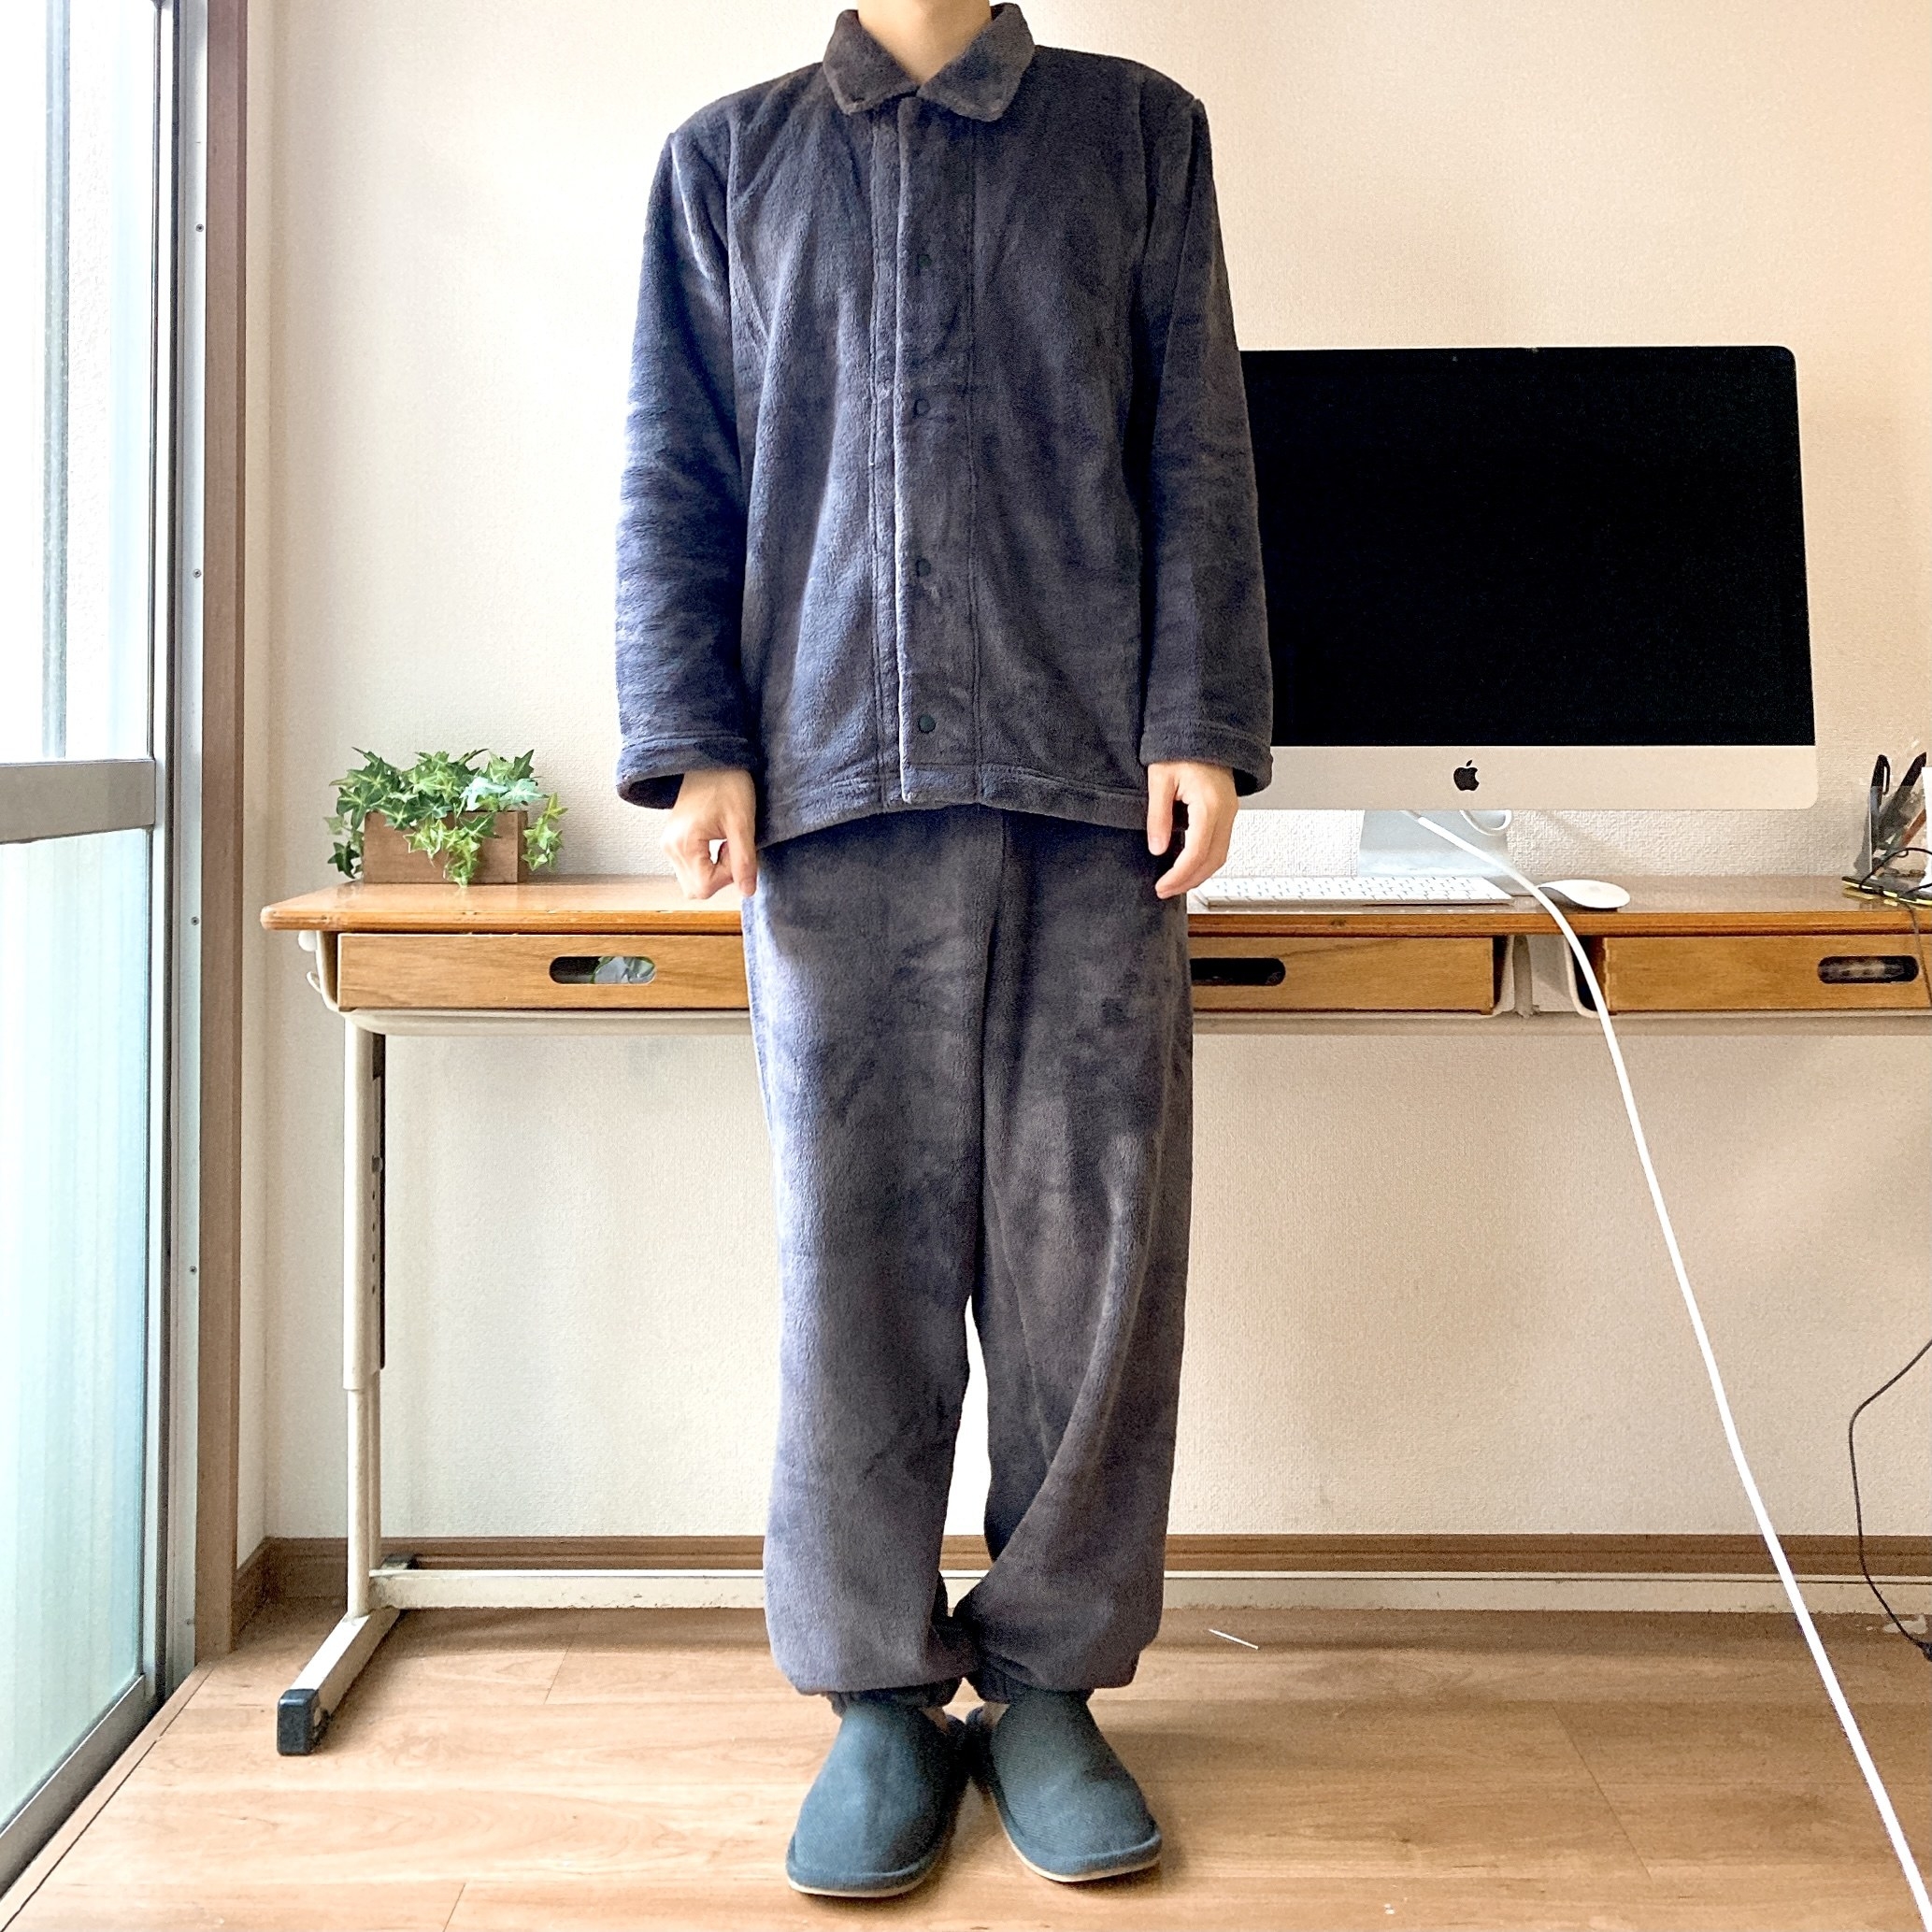 無印良品のオススメファッションアイテム「着る毛布 パジャマ」